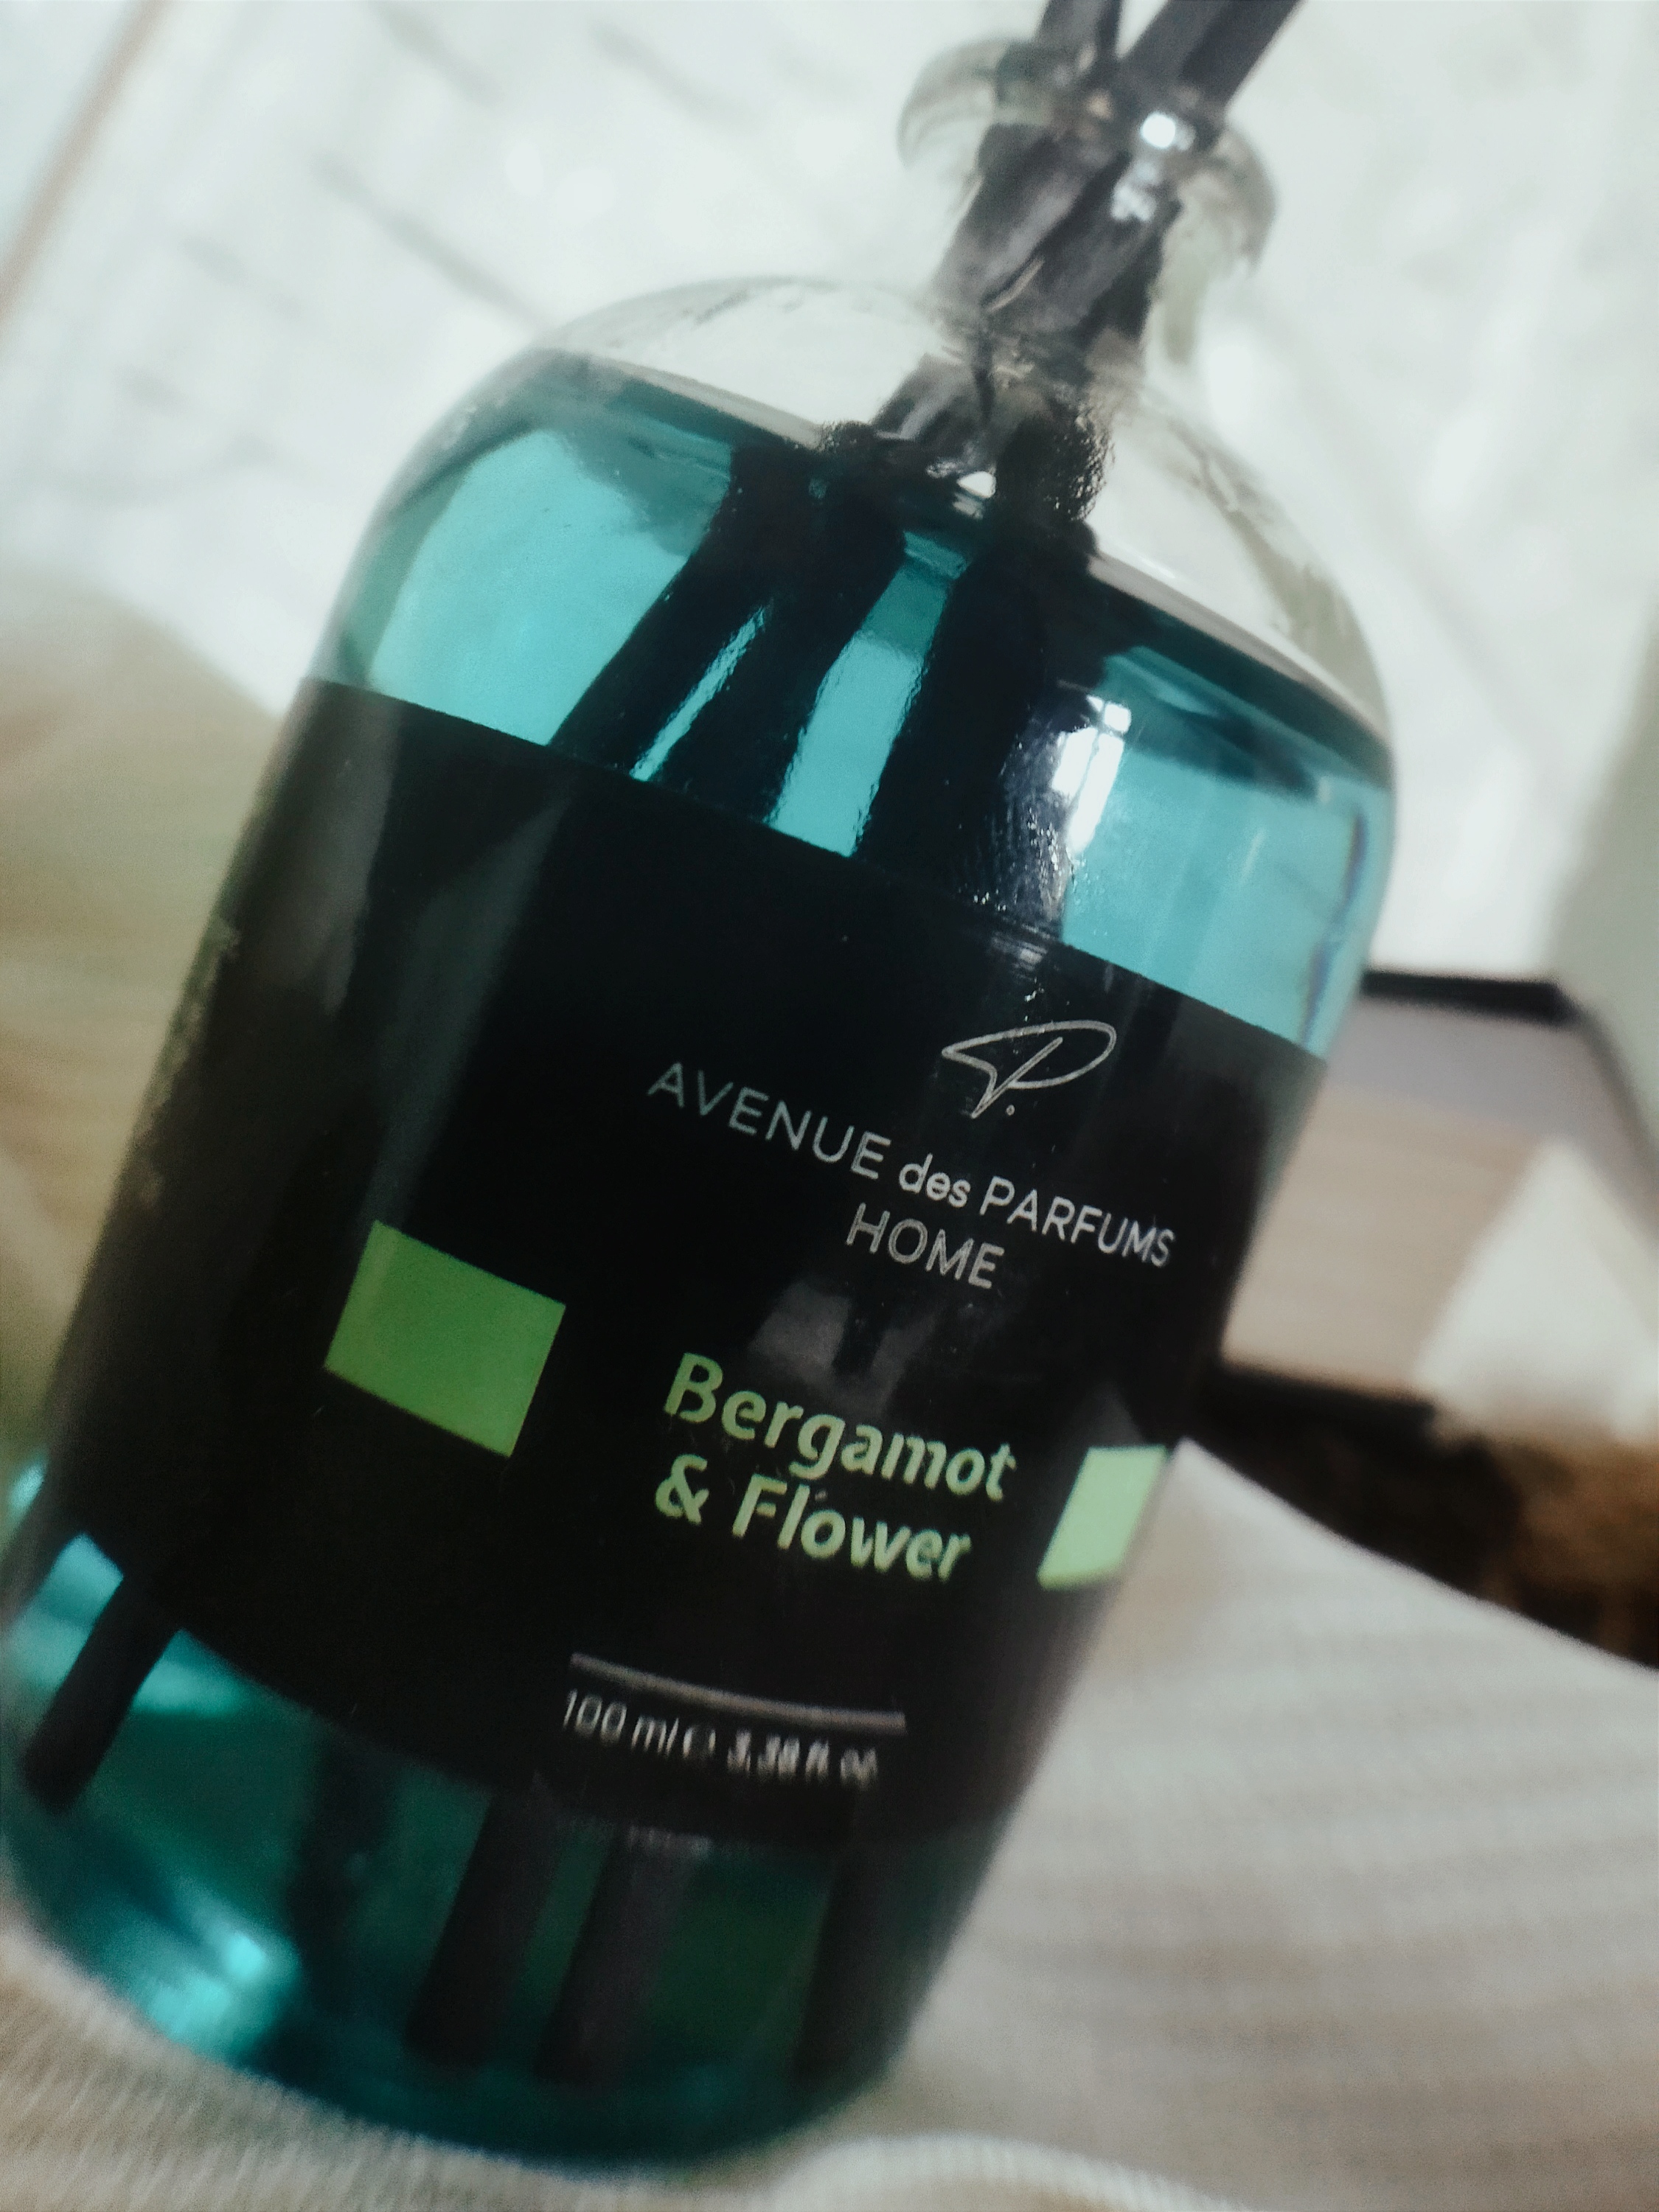 Avenue Des Parfums Home Bergamot & Flower